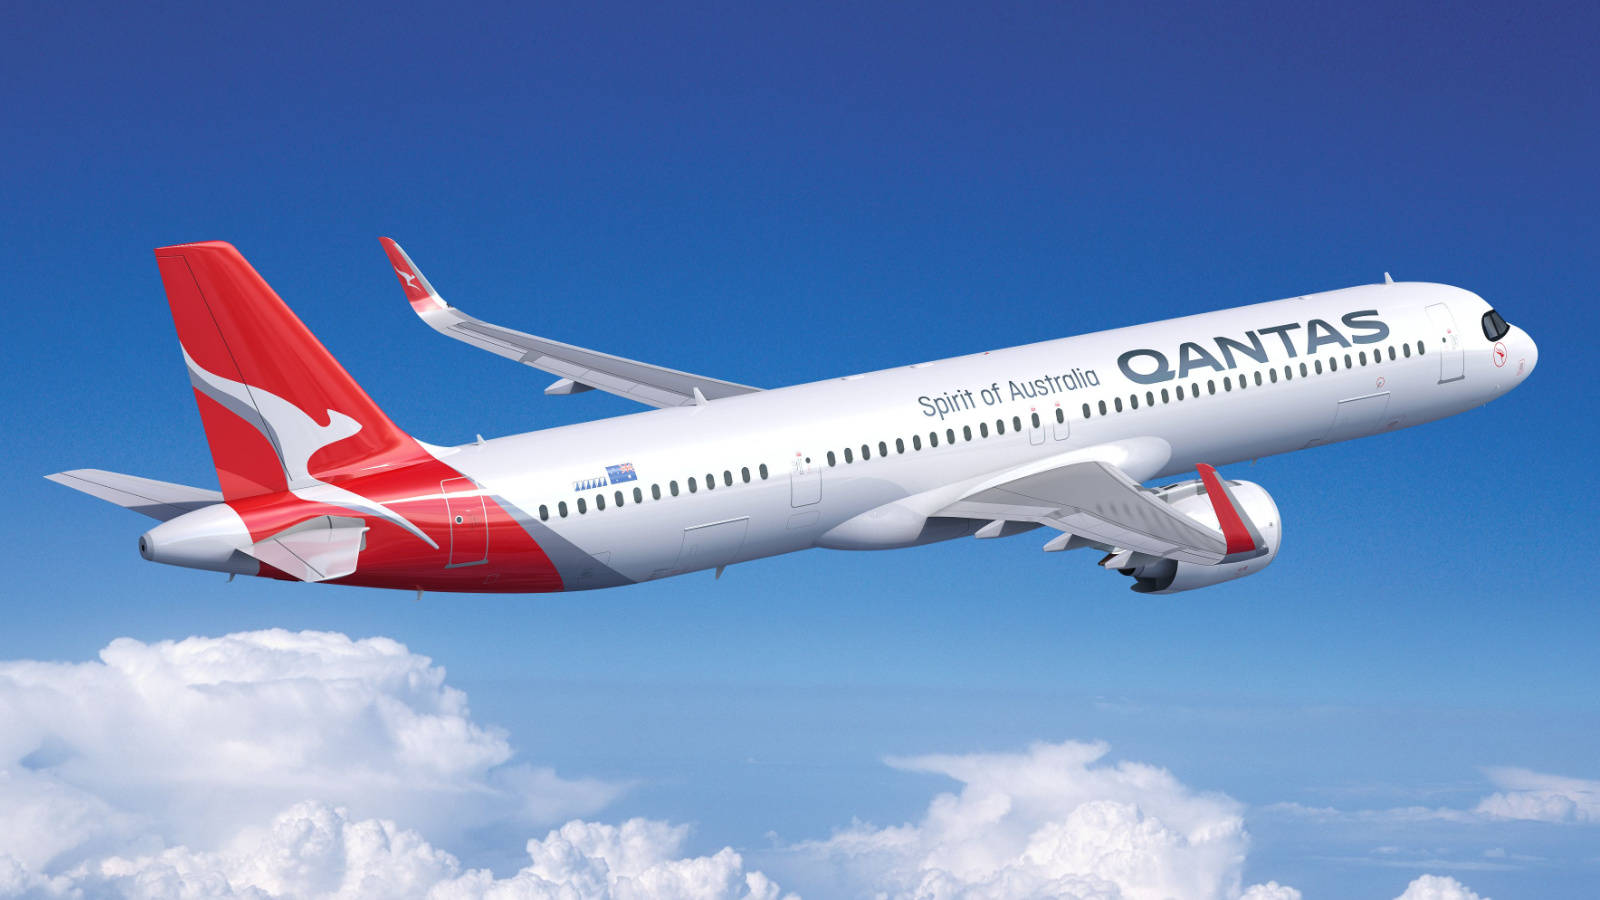 Qantas Boeing 737 Fleet In The Sky Wallpaper